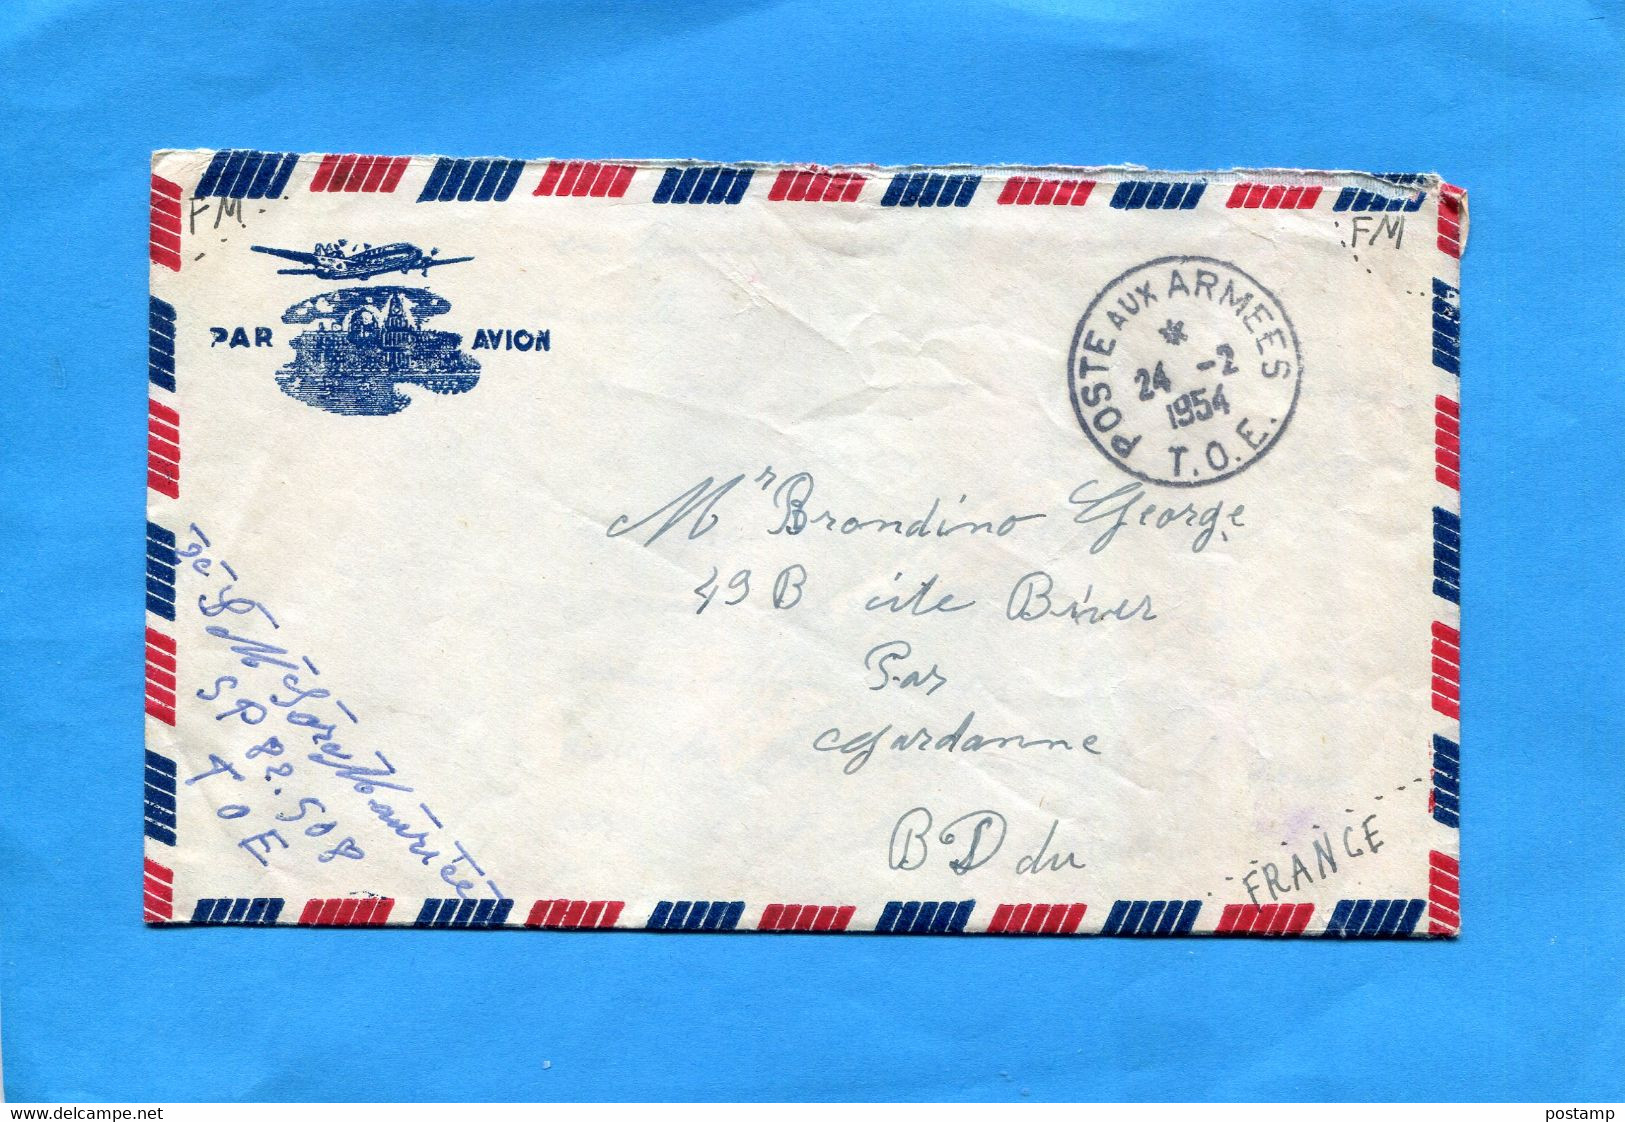 MARCOPHILIE Guerre D'indochine-lettre Cad Poste Aux Armées1954 T O E-expédiée Par SP82508 - Guerra De Indochina/Vietnam